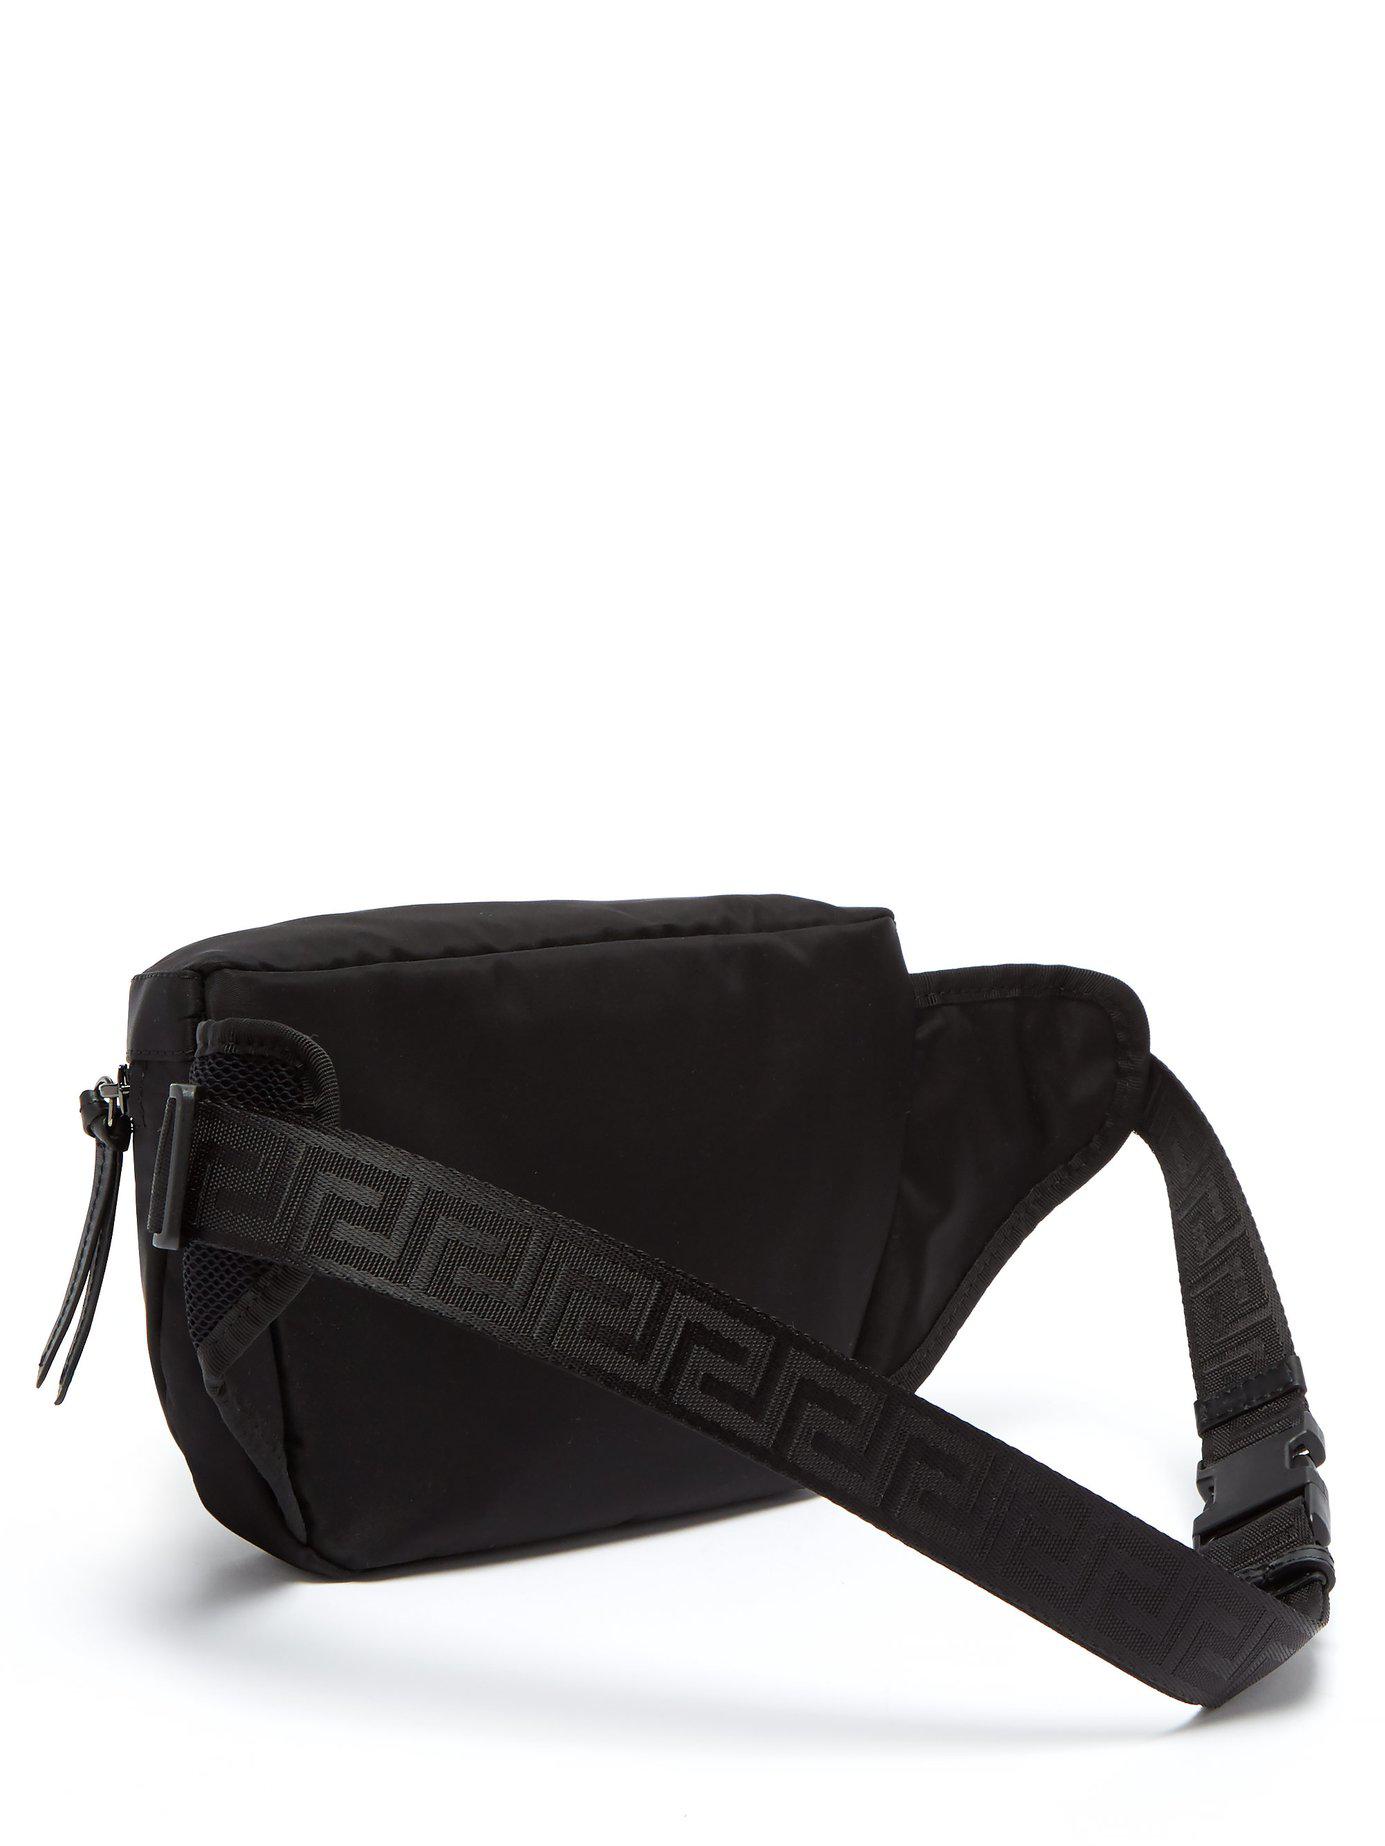 Versace Synthetic Medusa Nylon Belt Bag in Black for Men - Lyst